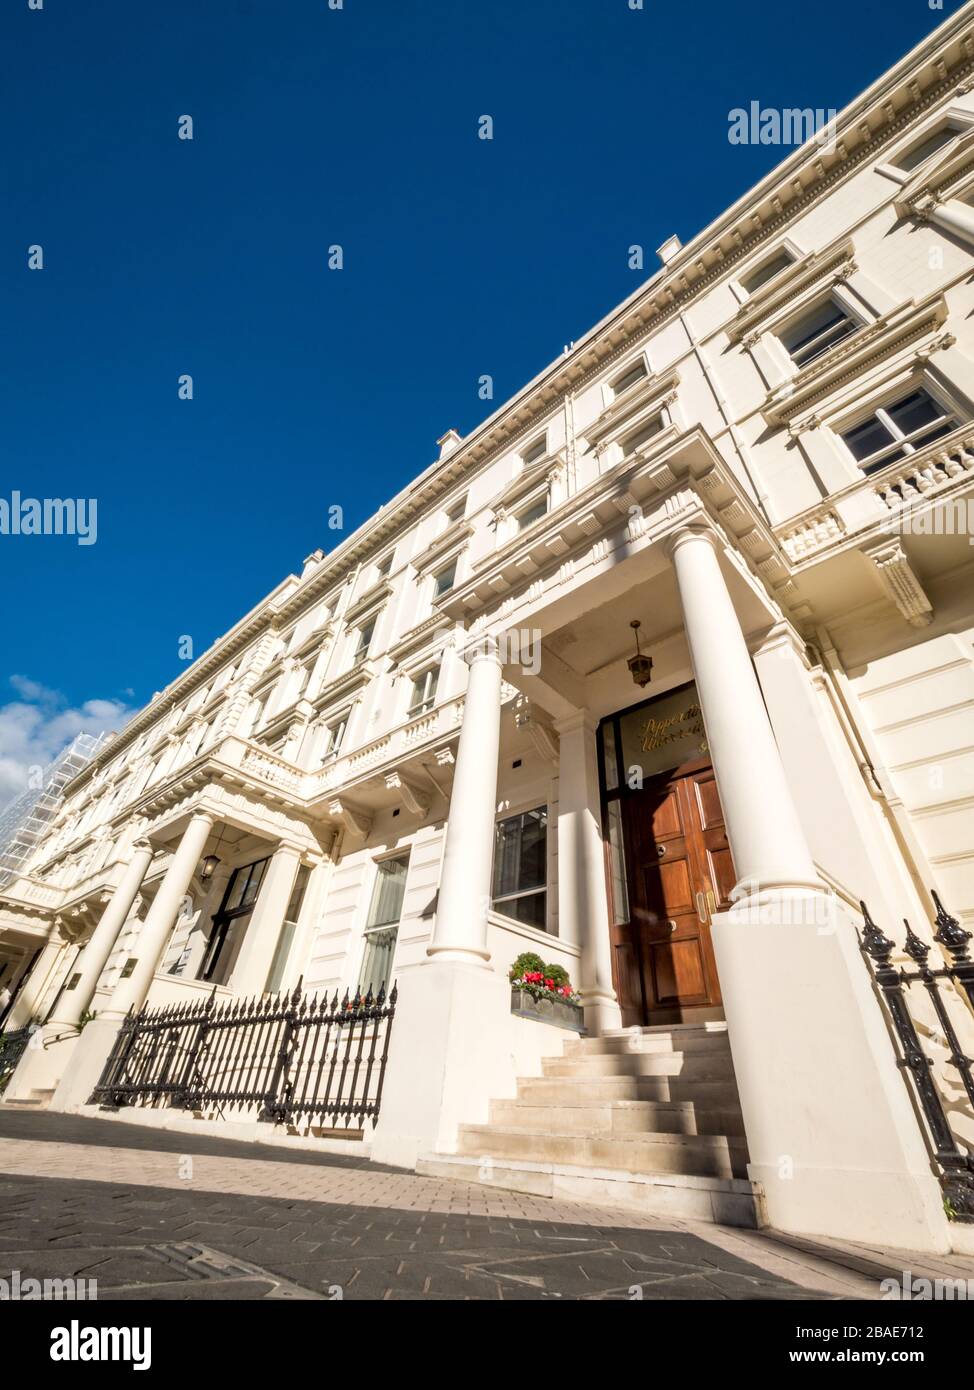 Architecture géorgienne, Kensington, Londres. Vue à angle bas sur les maisons mitoyennes dans le quartier prospère de Kensington, dans l'ouest de Londres. Banque D'Images